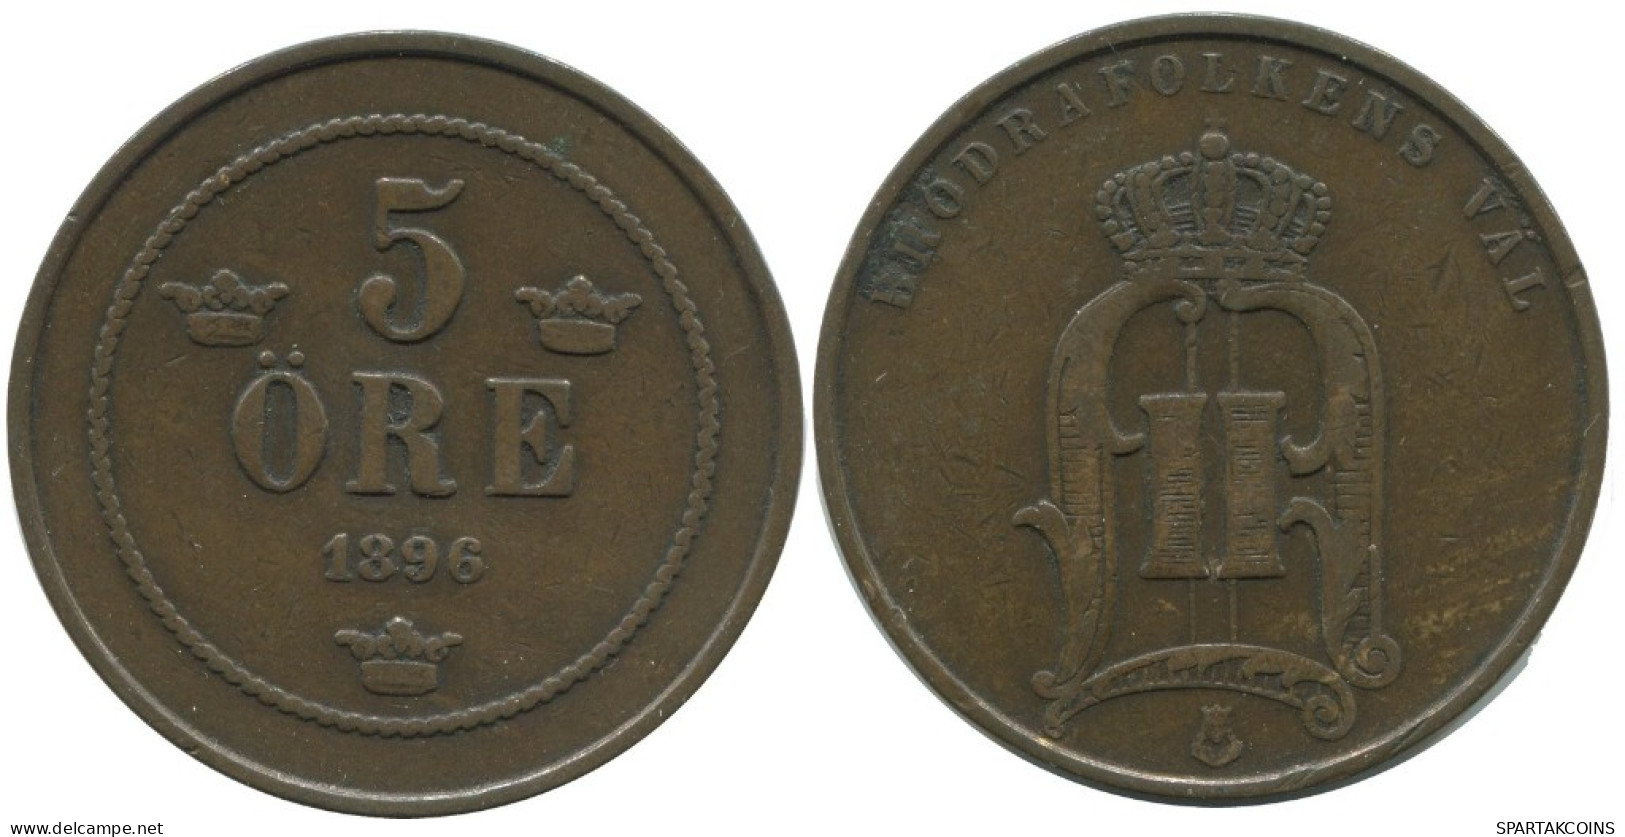 5 ORE 1896 SWEDEN Coin #AC480.2.U.A - Suède